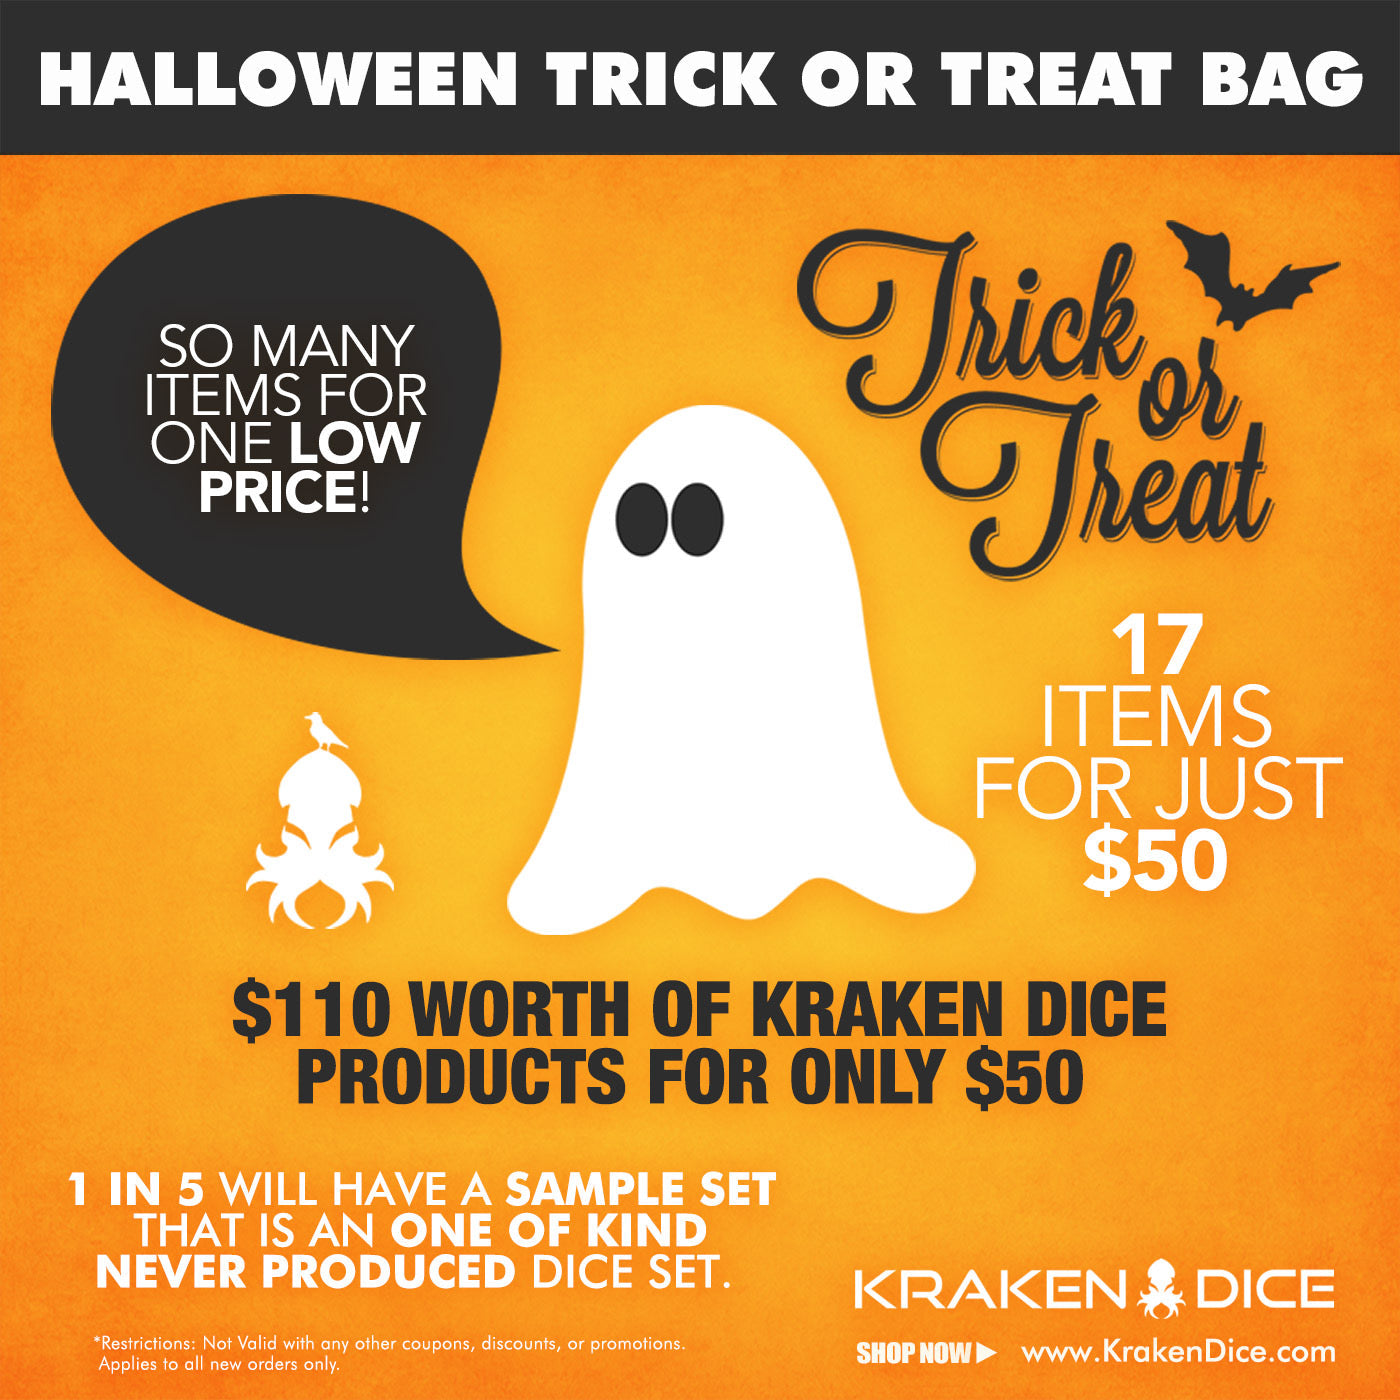 Kraken's Halloween Trick or Treat bag